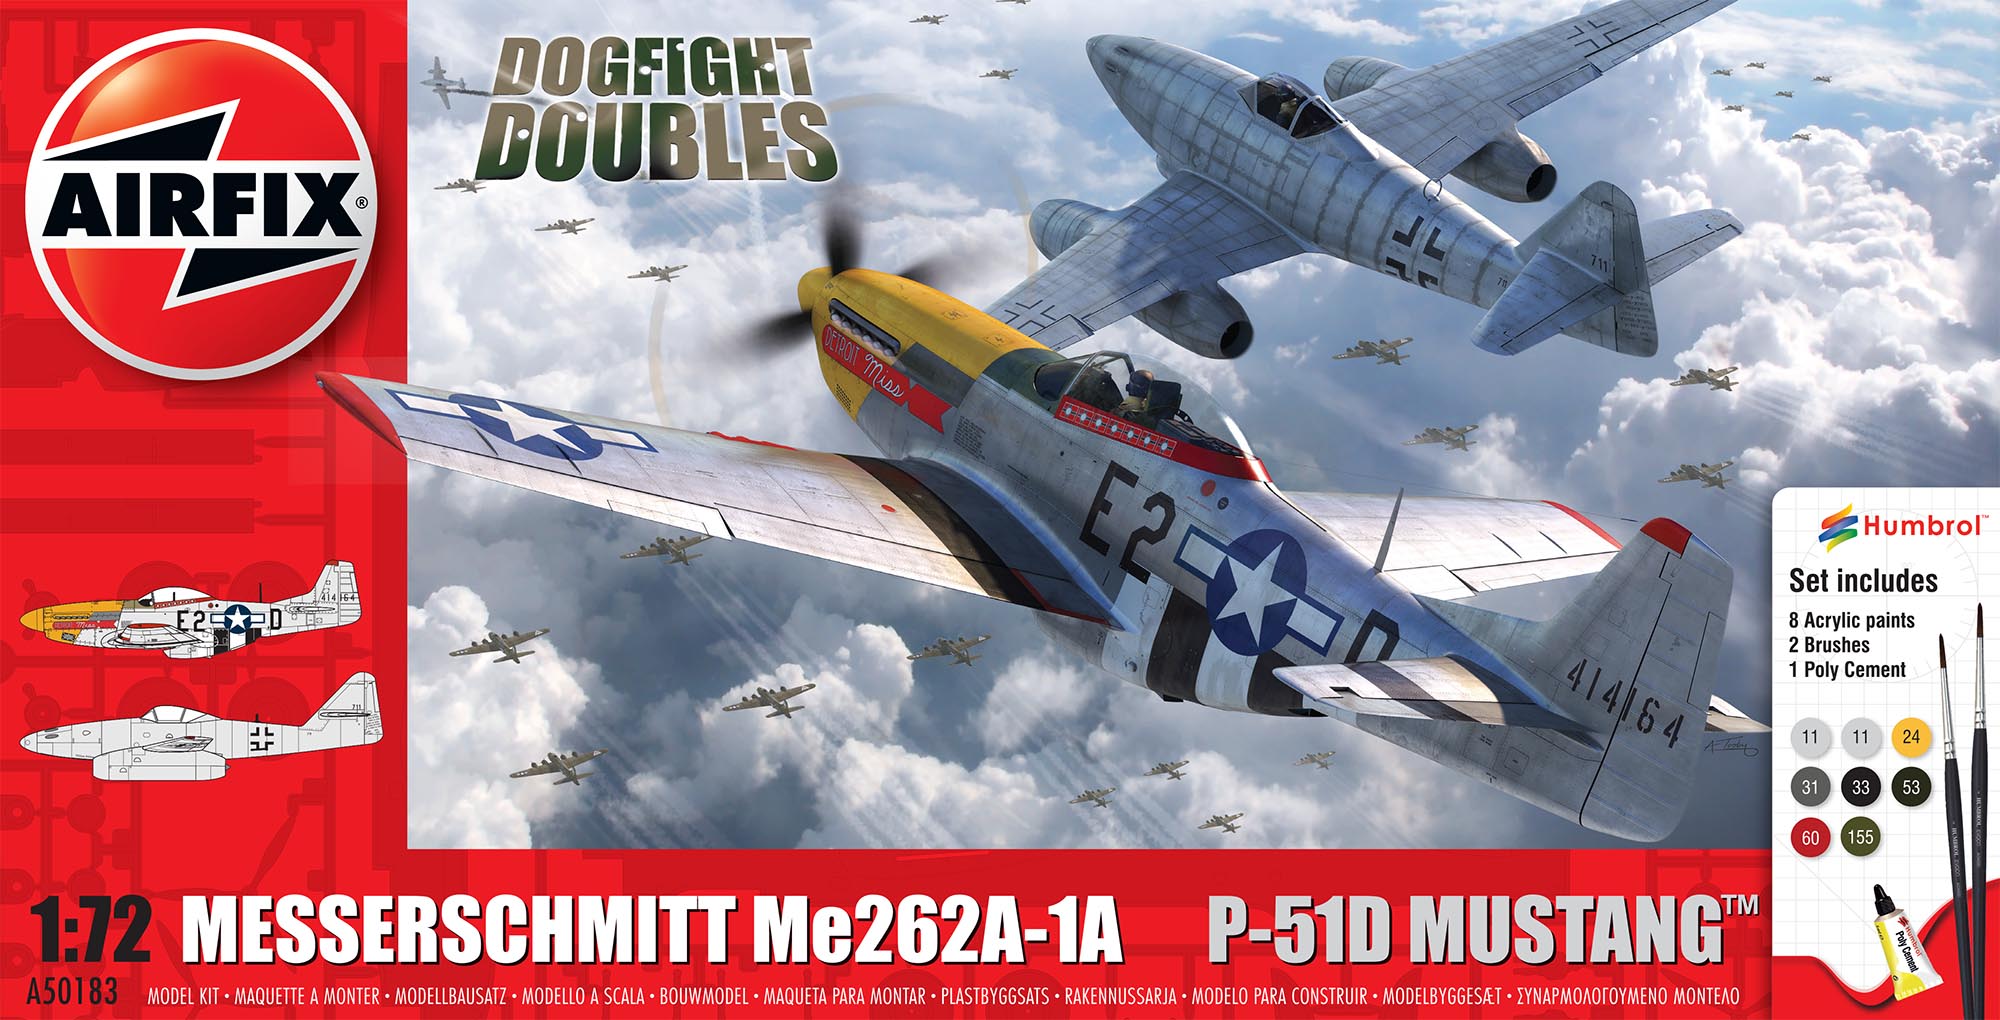 Messerschmitt Me262 & P51D Mustang Dogfight Doubles Gift Set